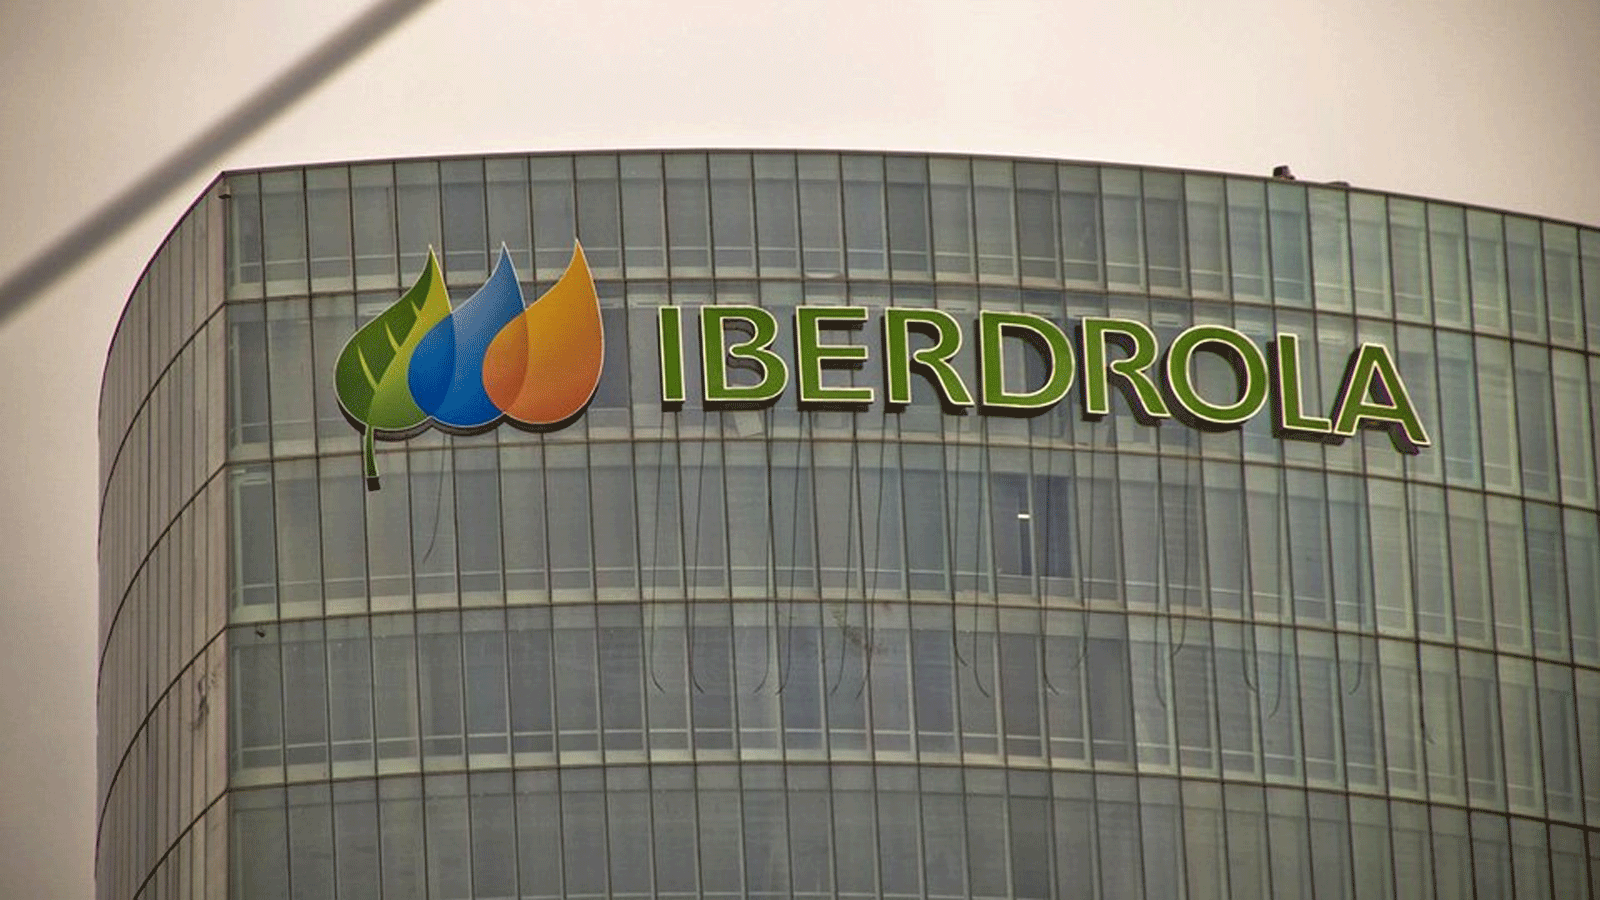 هيئة تنظيم الطاقة في المكسيك تُغرّم شركة Iberdrola 467 مليون دولار لبيعها الطاقة الكهربائية خلافا للقانون